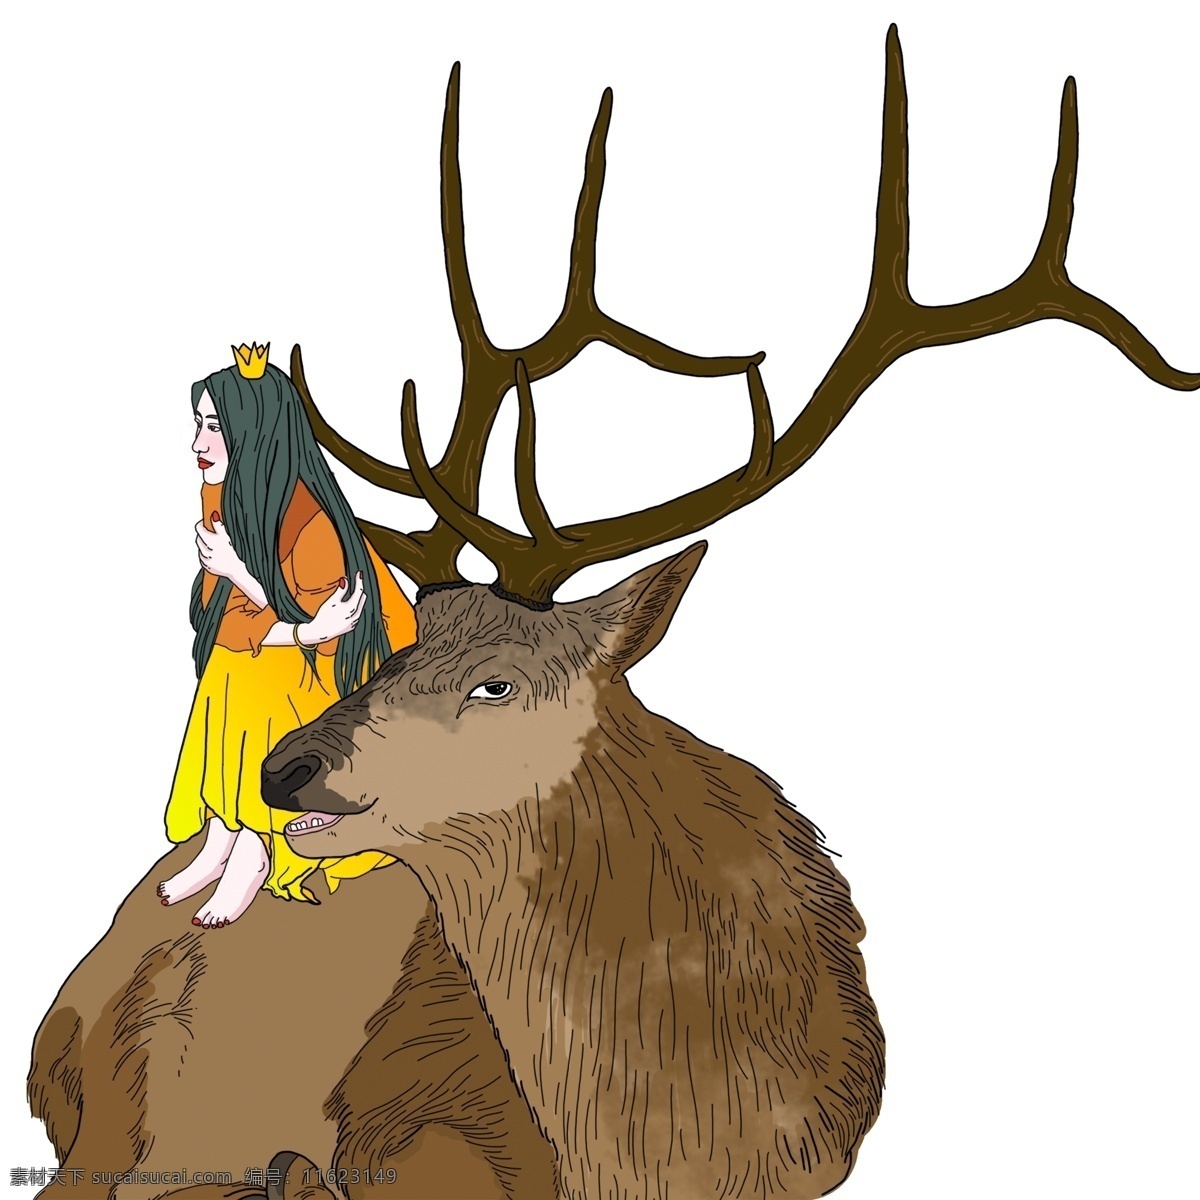 少女 小鹿 装饰 元素 清新 皇冠 长发 装饰元素 手绘 黄裙